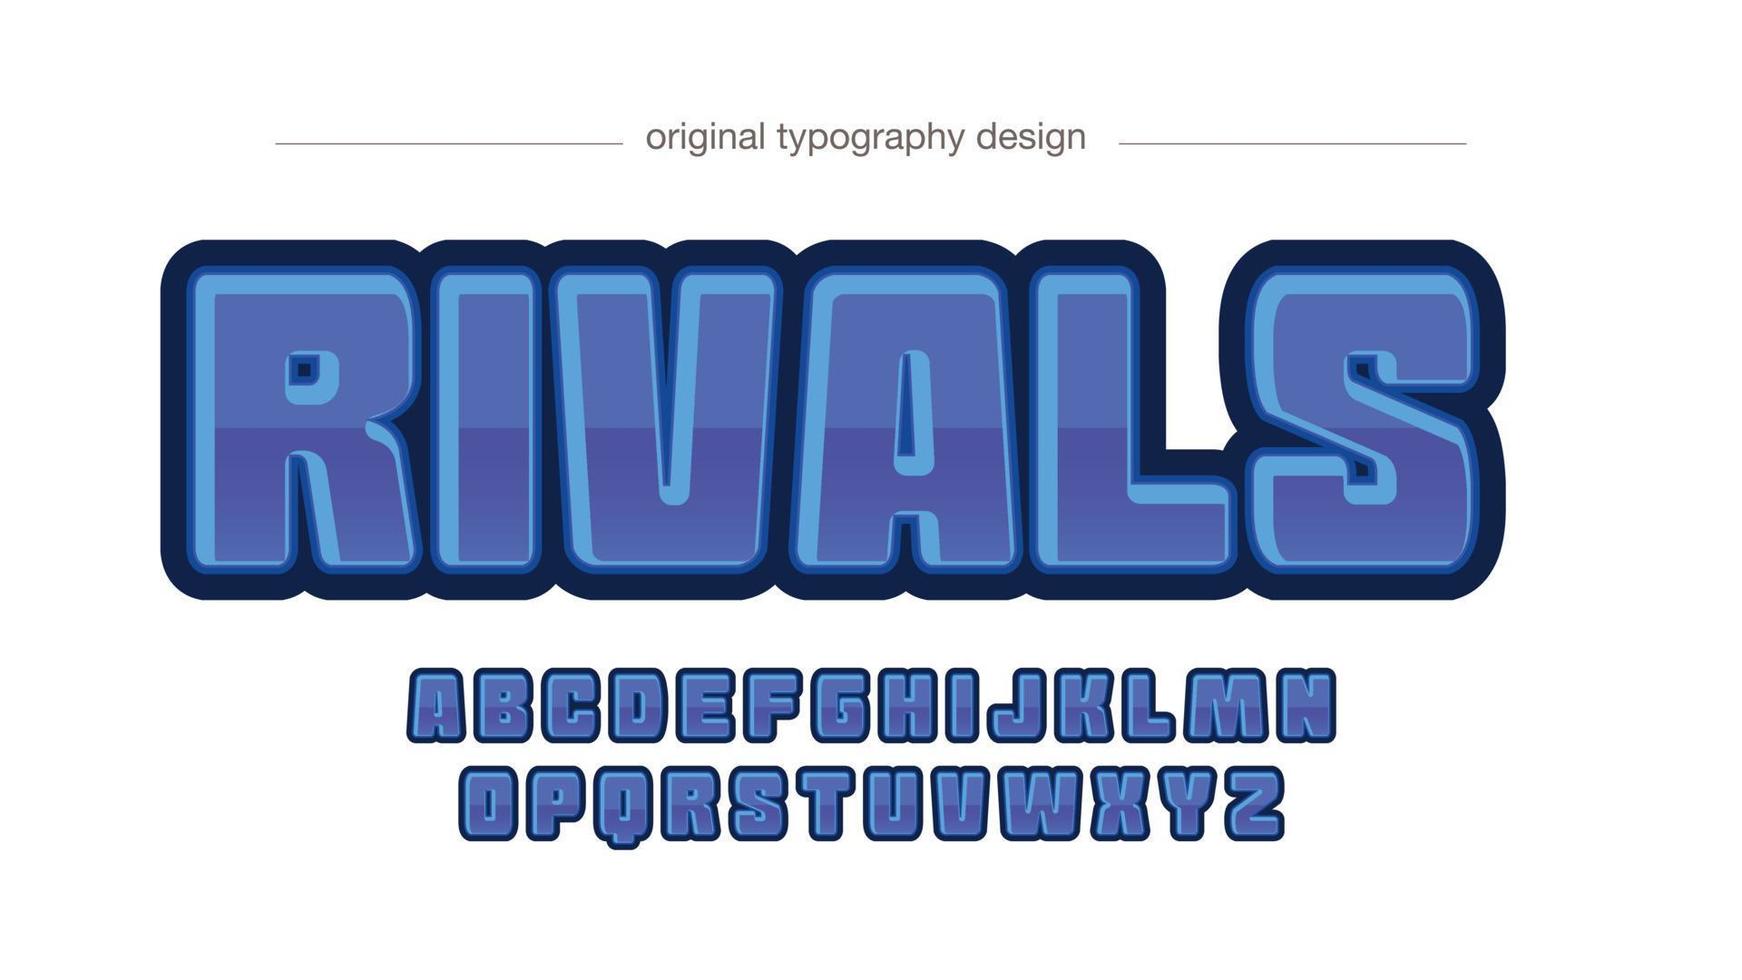 blauwe typografie van het 3D-spellogo in hoofdletters vector